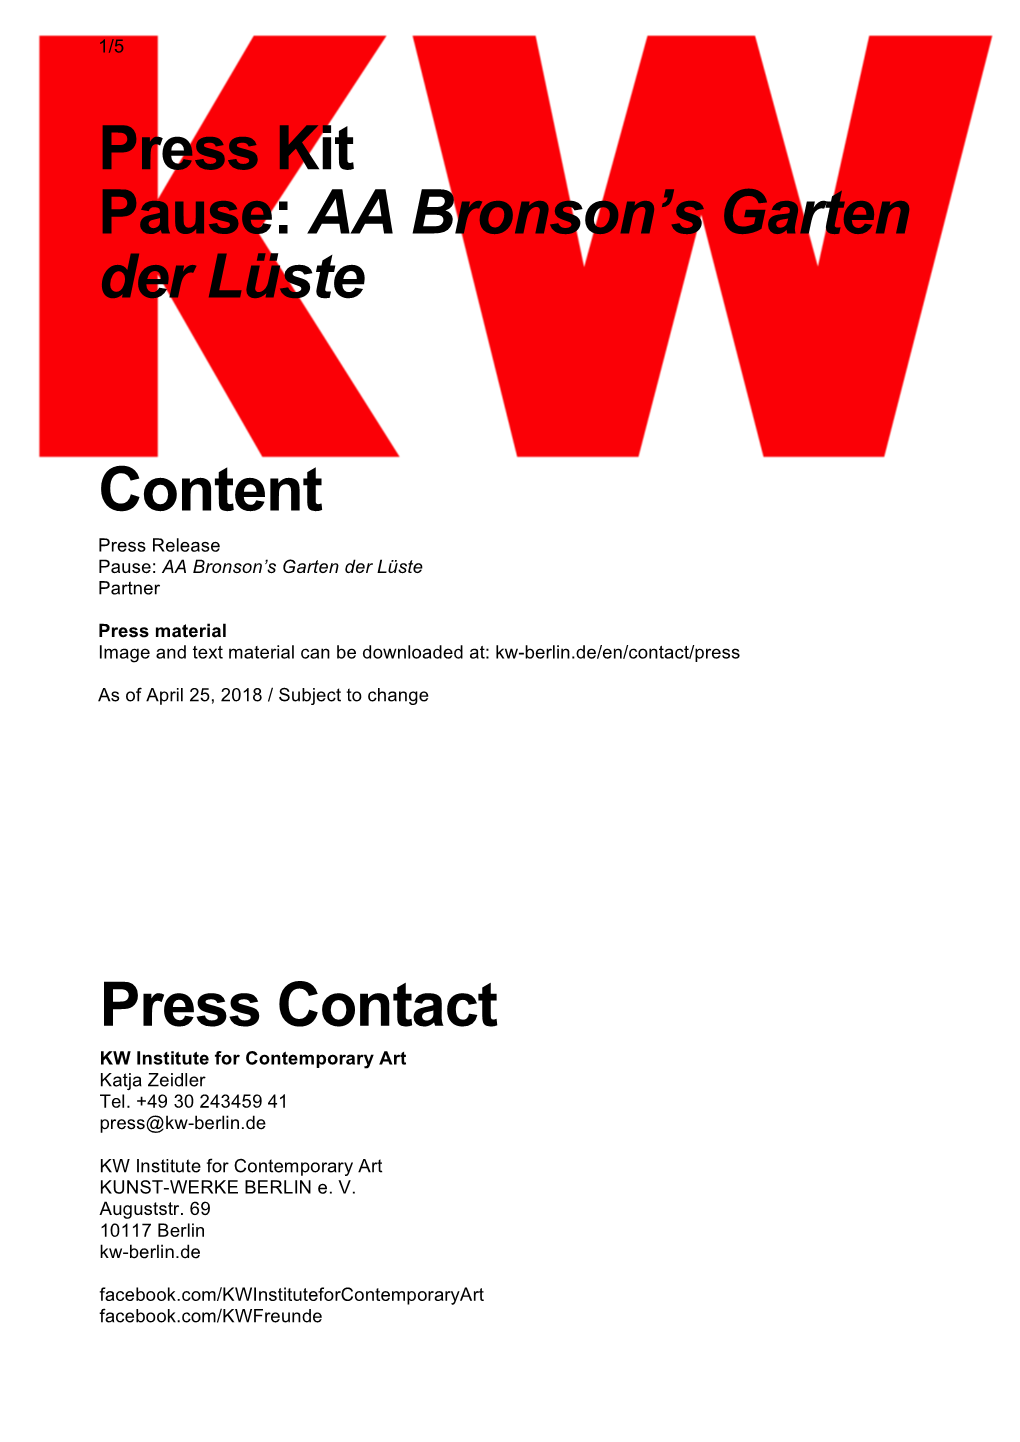 Press Contact Press Kit Pause: AA Bronson's Garten Der Lüste Content